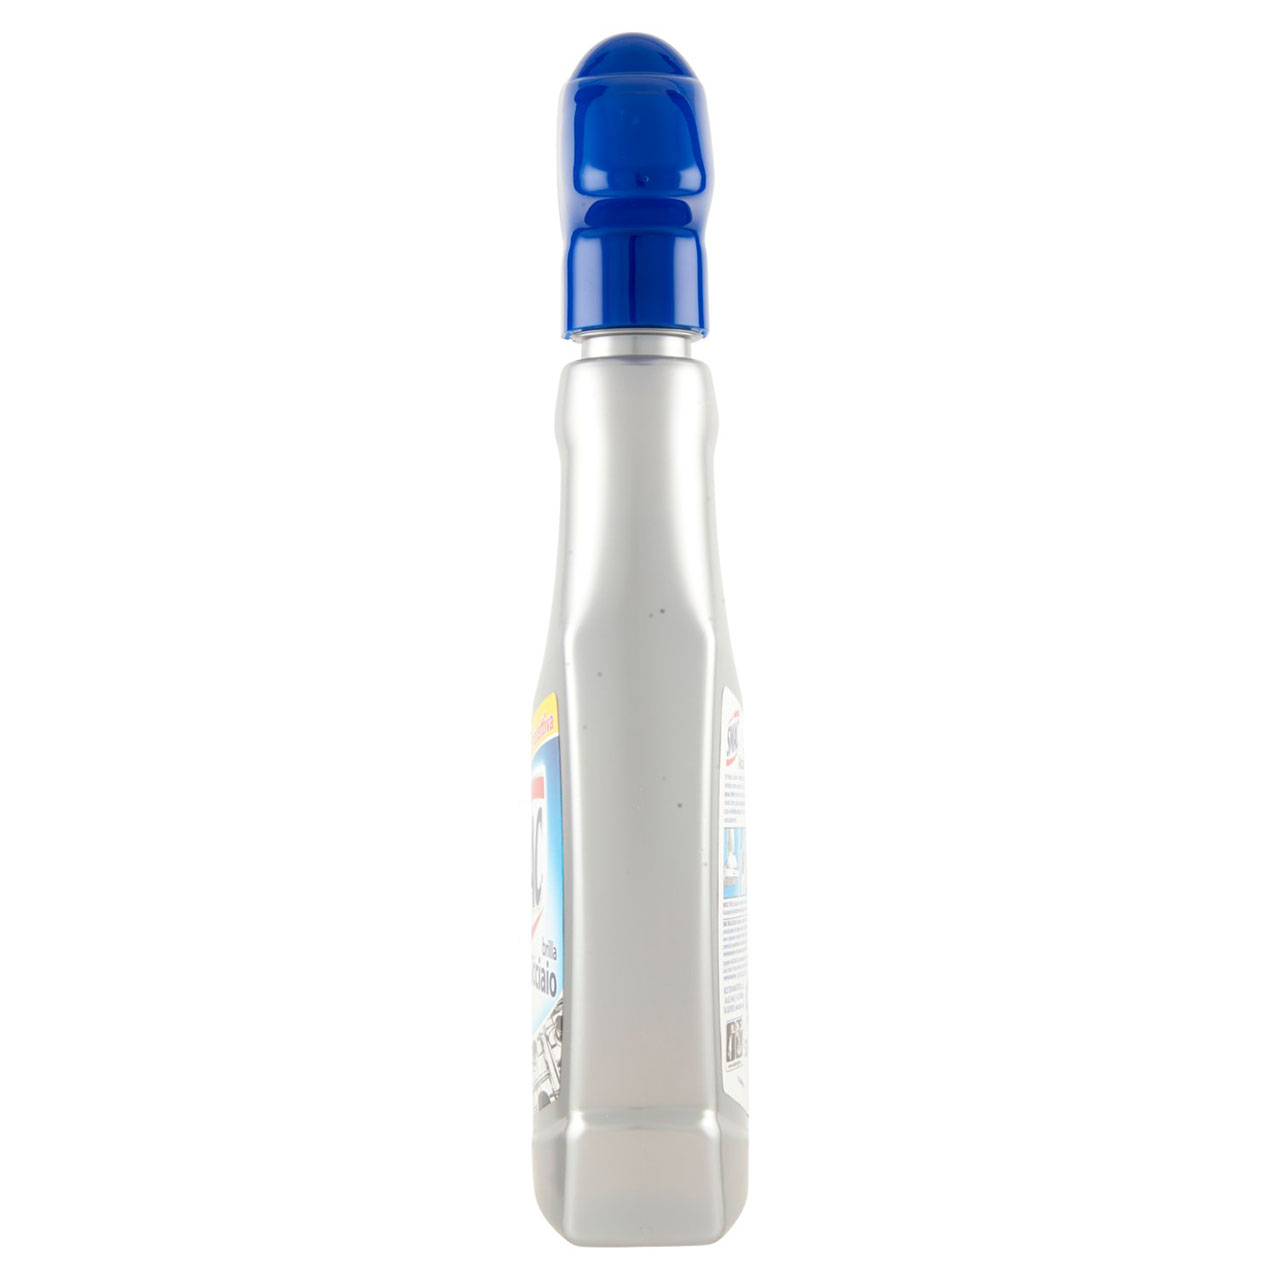 Smac - Brilla Acciaio Spray, Detergente per Superfici in Acciaio, Azione Lucidante 520 ml